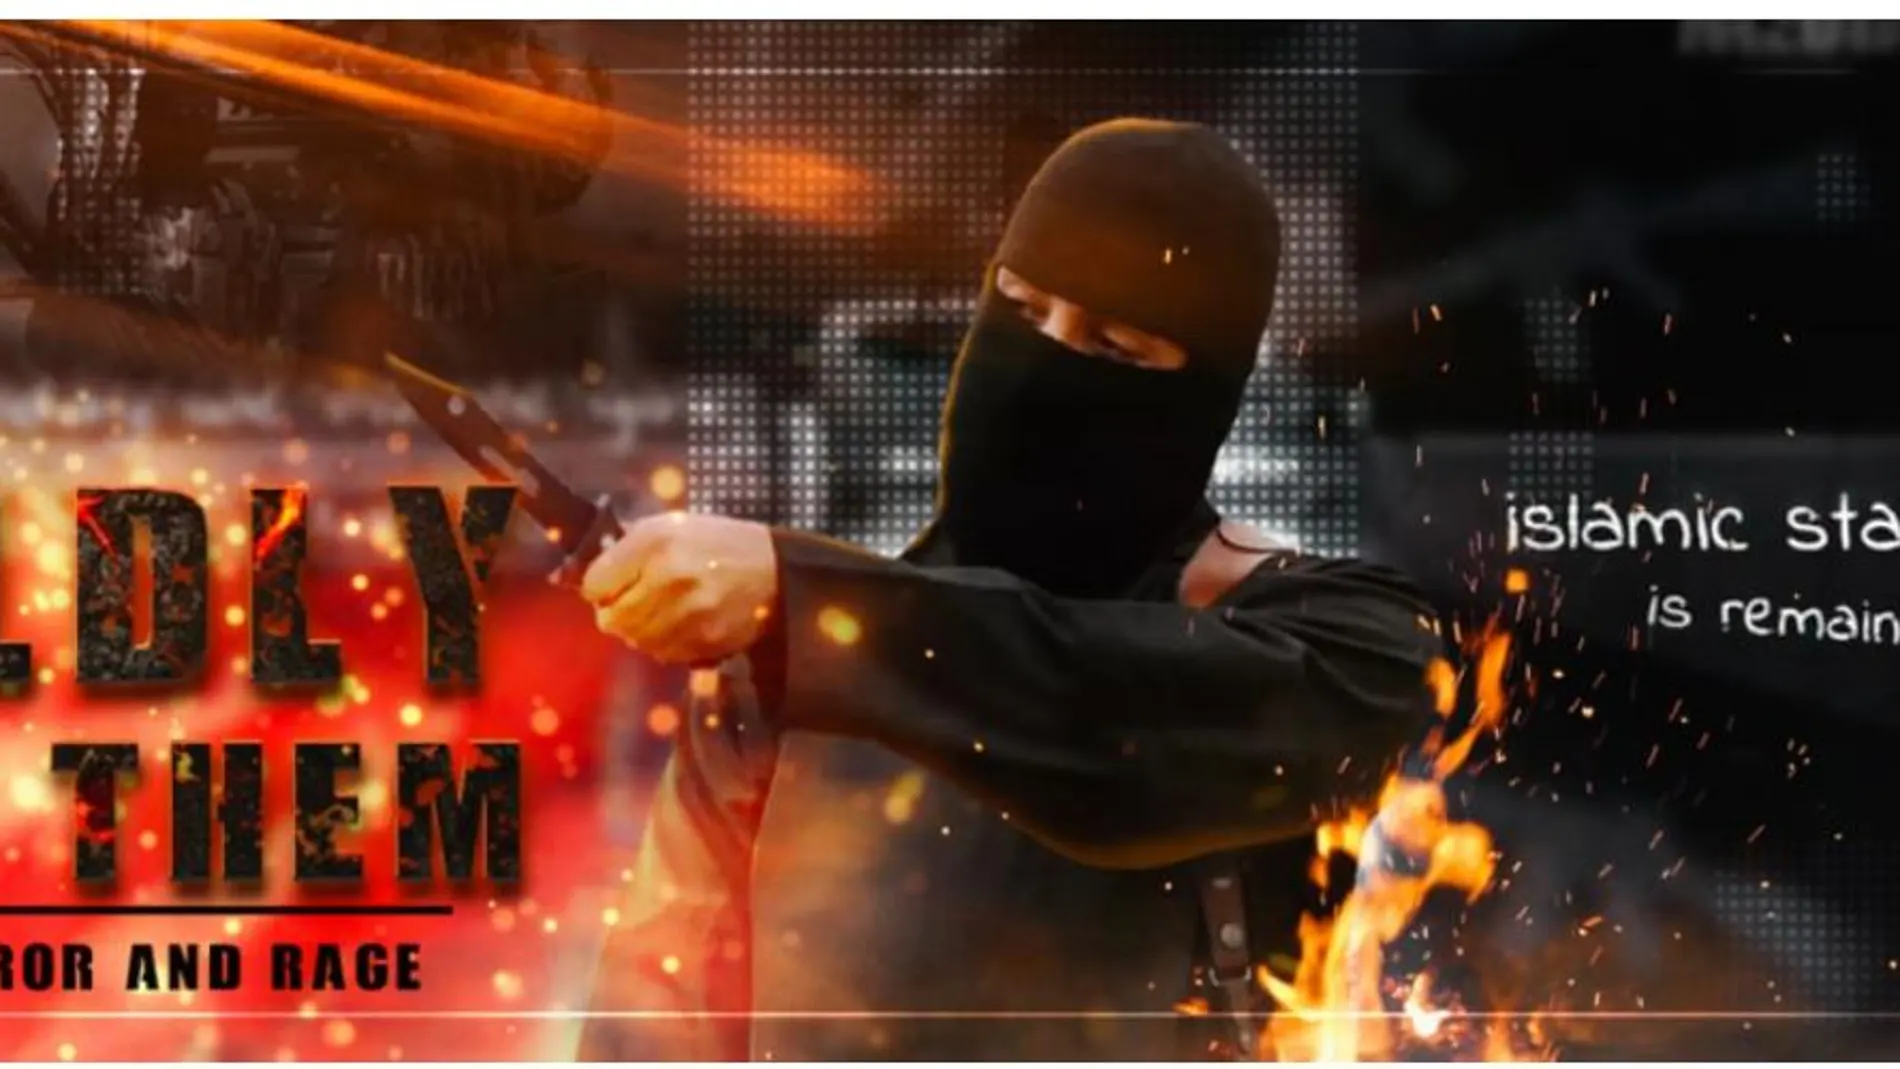 Portada del vídeo del Estado Islámico en el que se pide asesinar "fríamente"